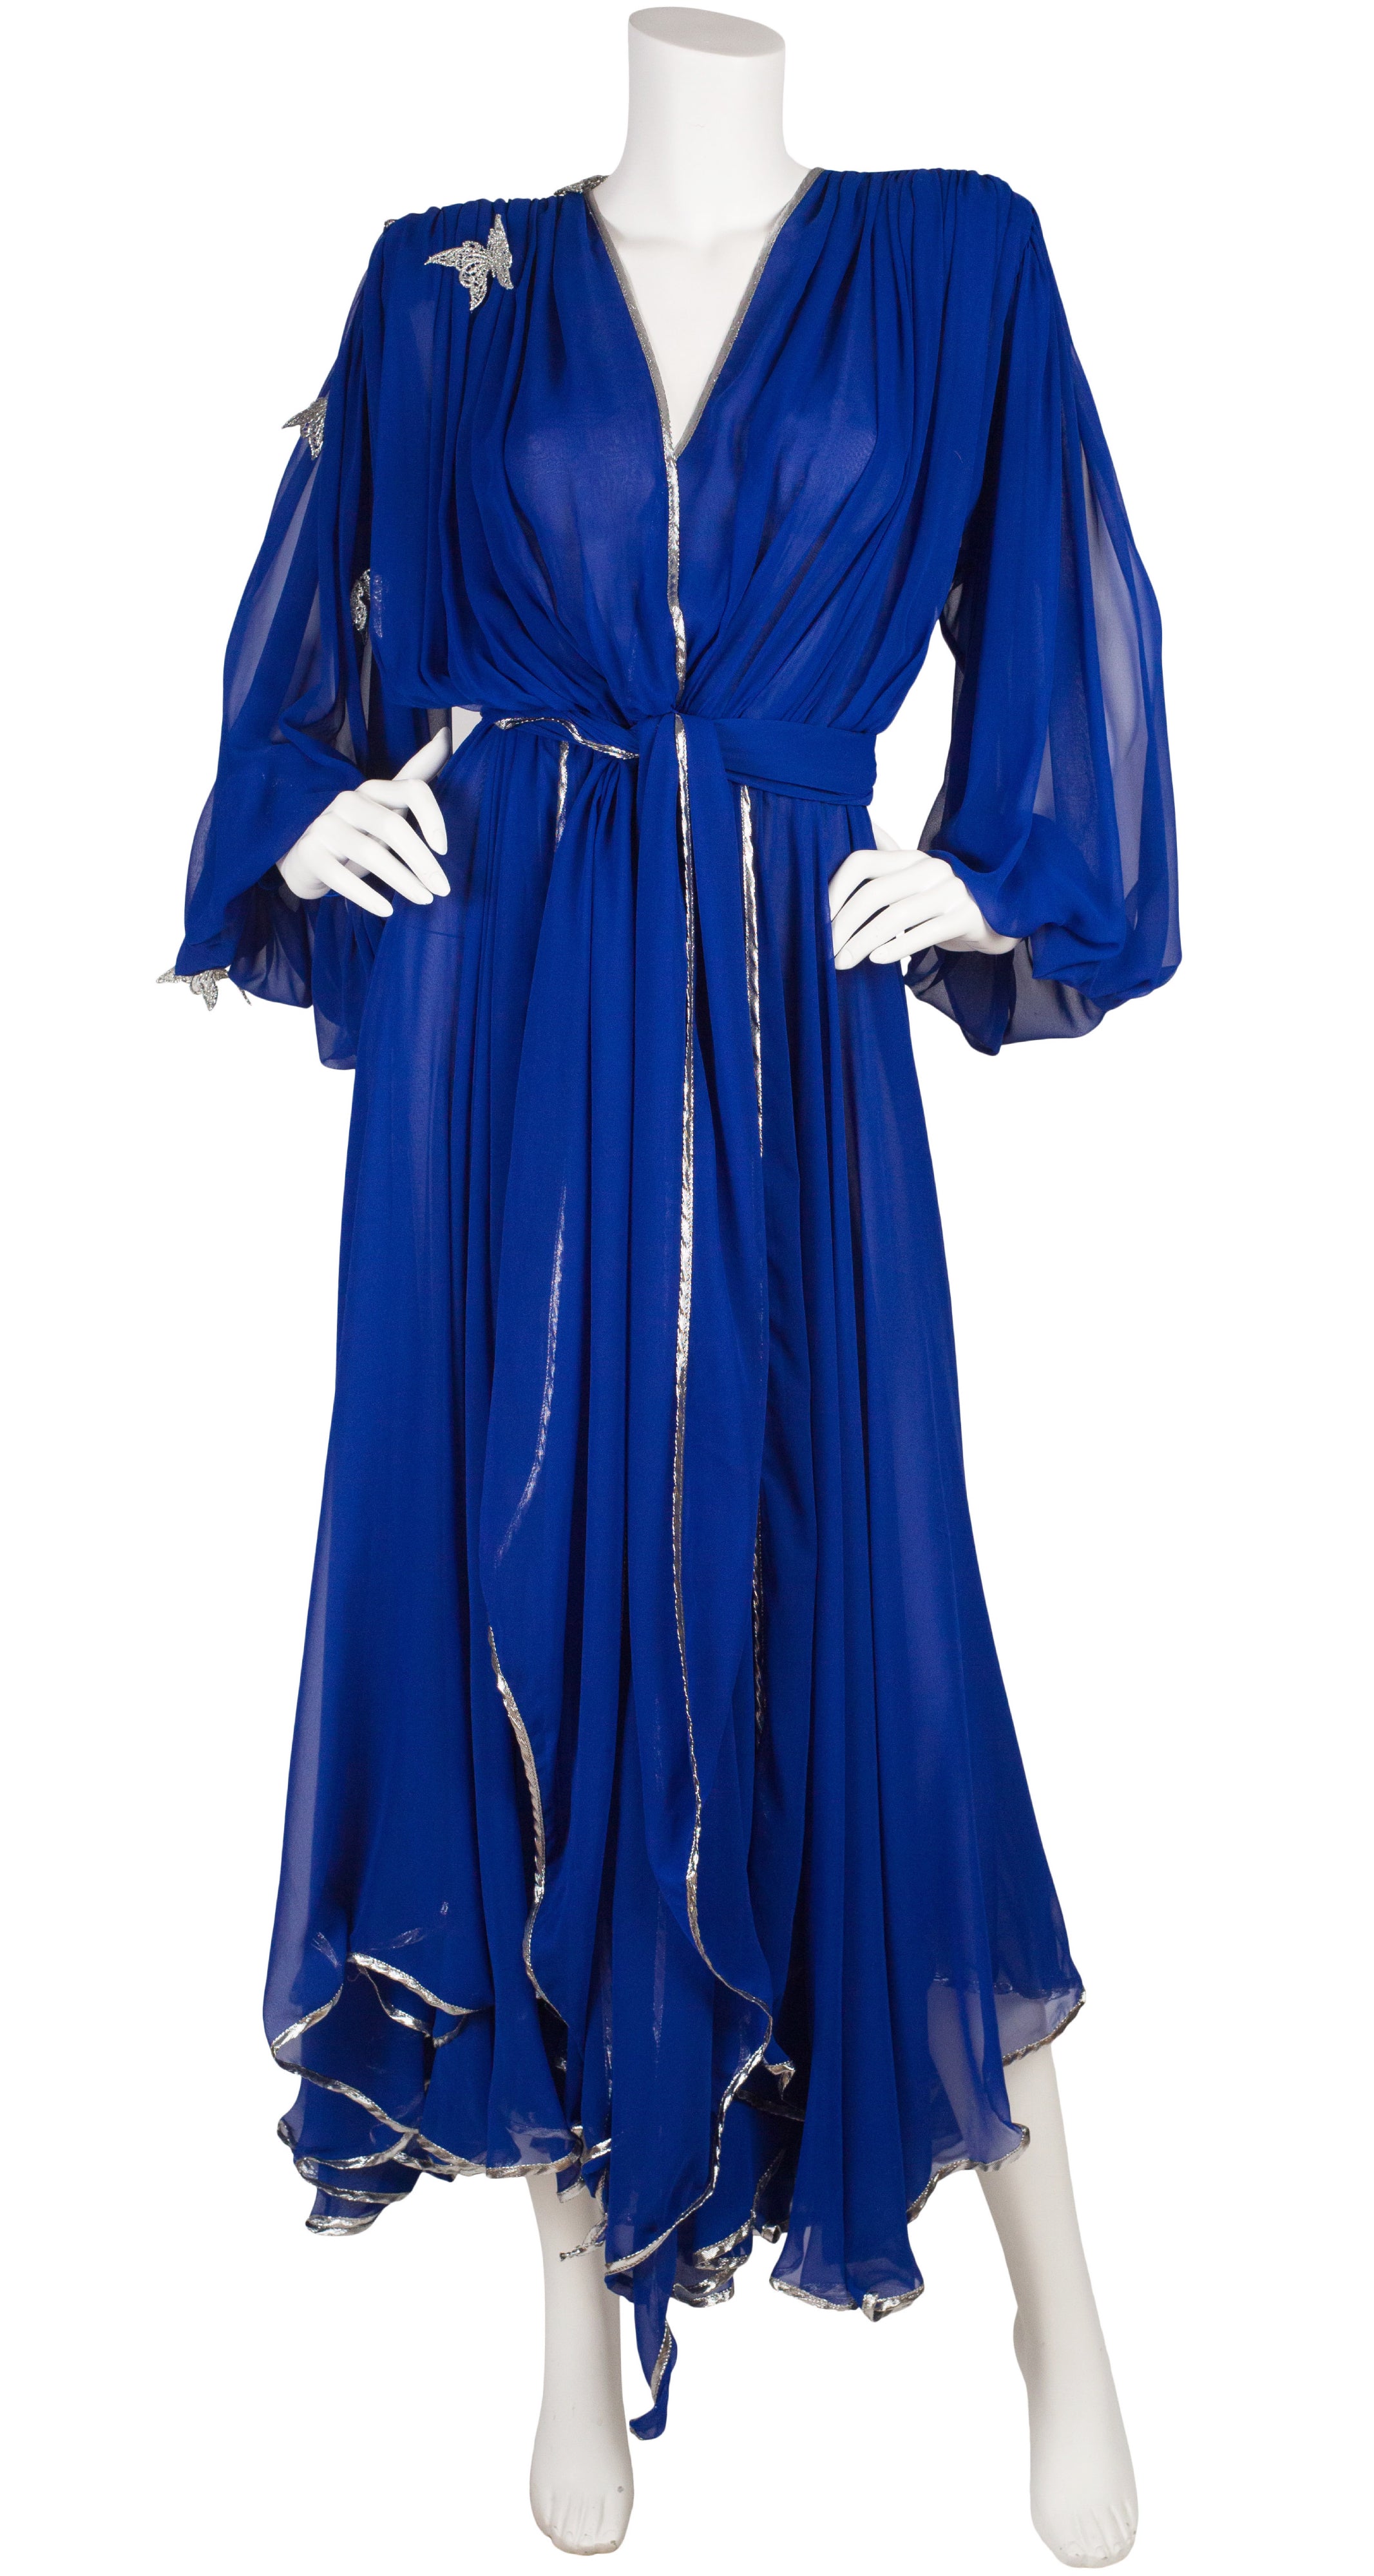 Wayne Clark 1980s Butterfly Appliqué Blue Chiffon Evening Dress ...